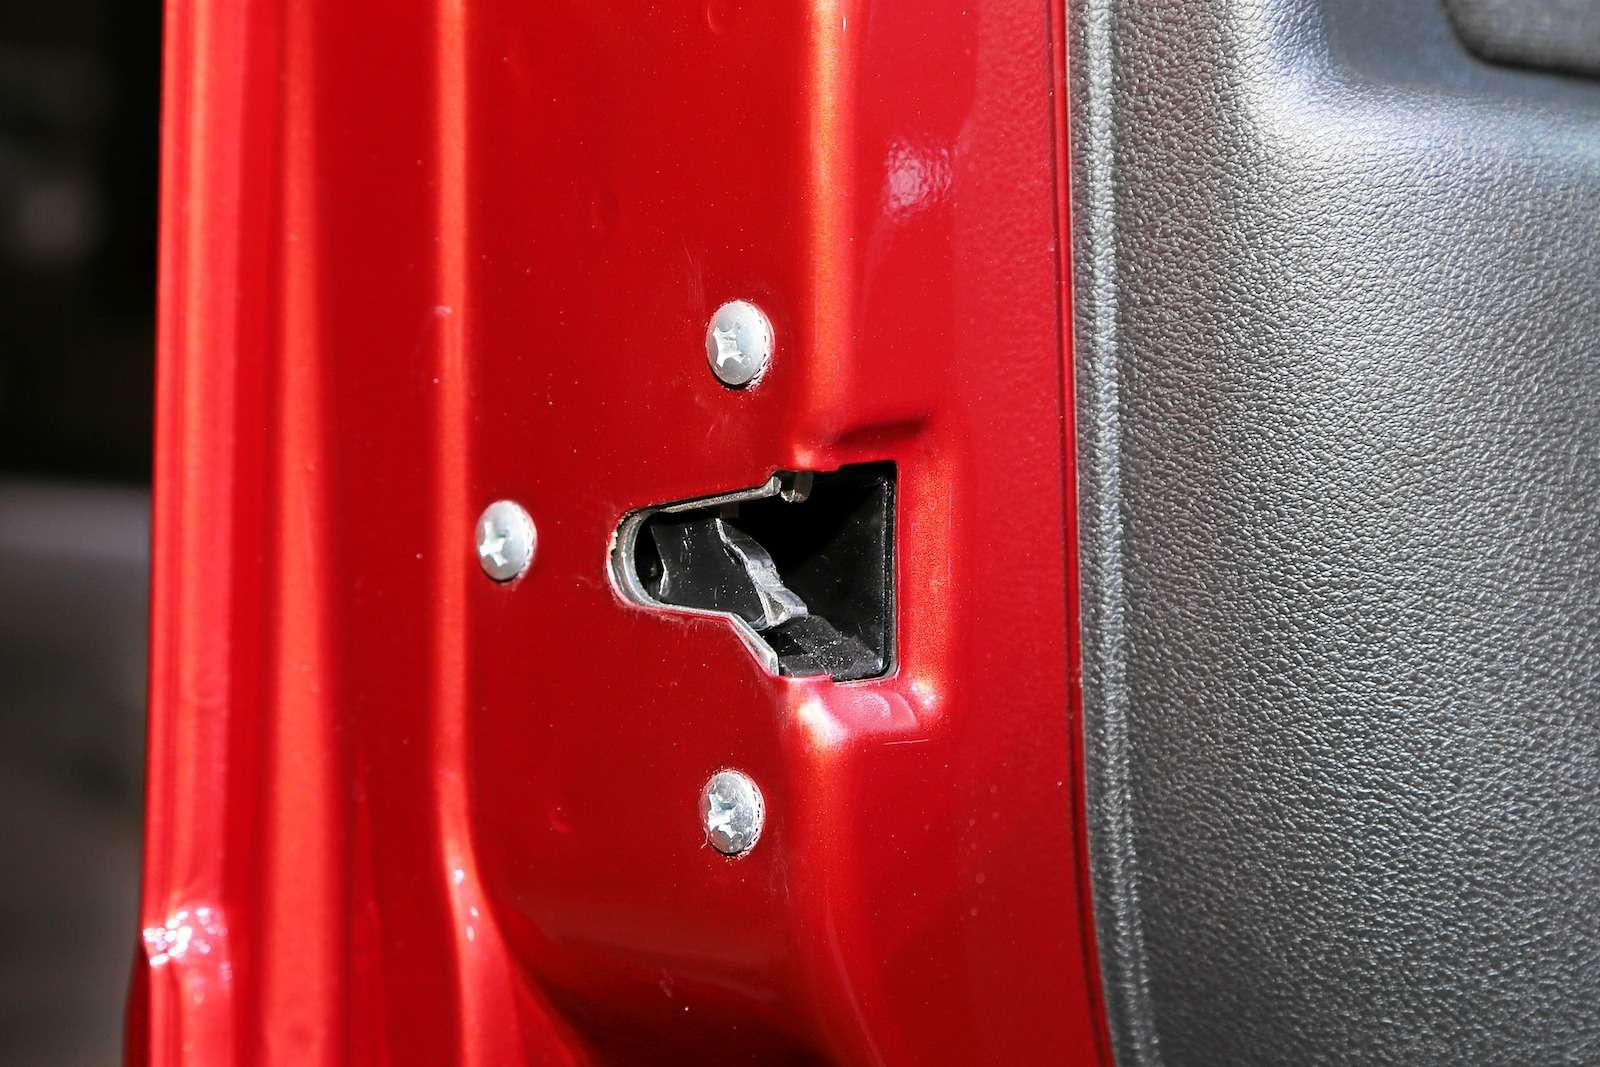 Обновленная Lada Granta представлена официально. И нет, она не подорожала! — фото 899807